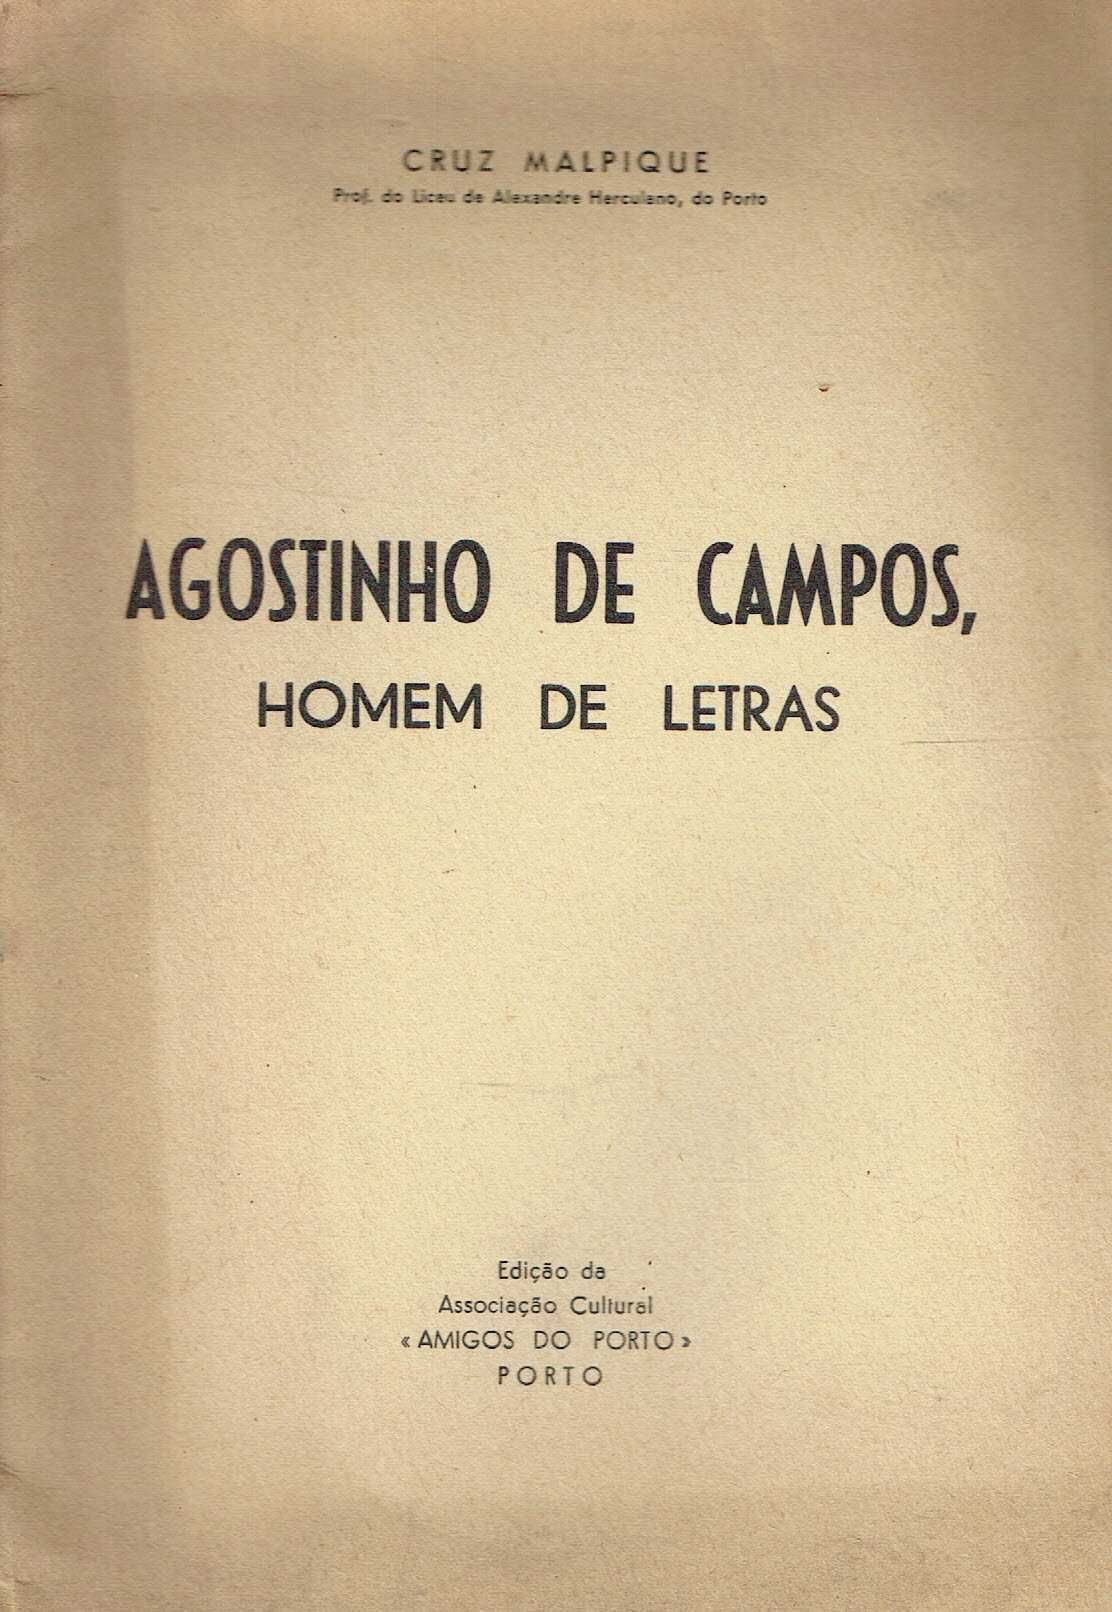 2358
	
Agostinho de Campos, homem de letras  
de  Cruz Malpique.